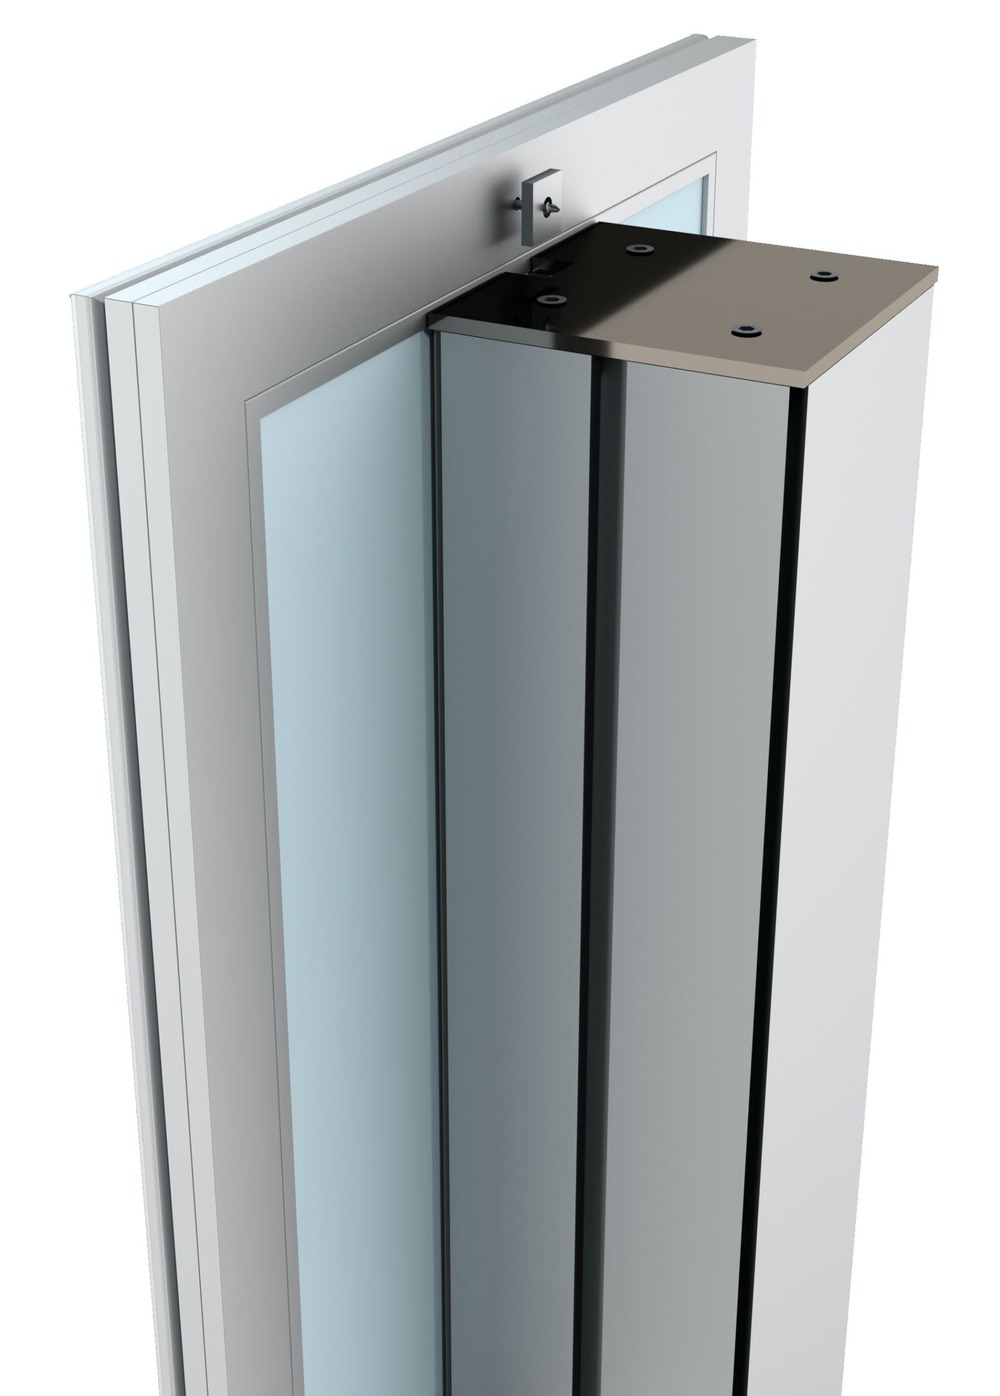 Freestanding Modular Sanitiser Dispenser 5 Scaled